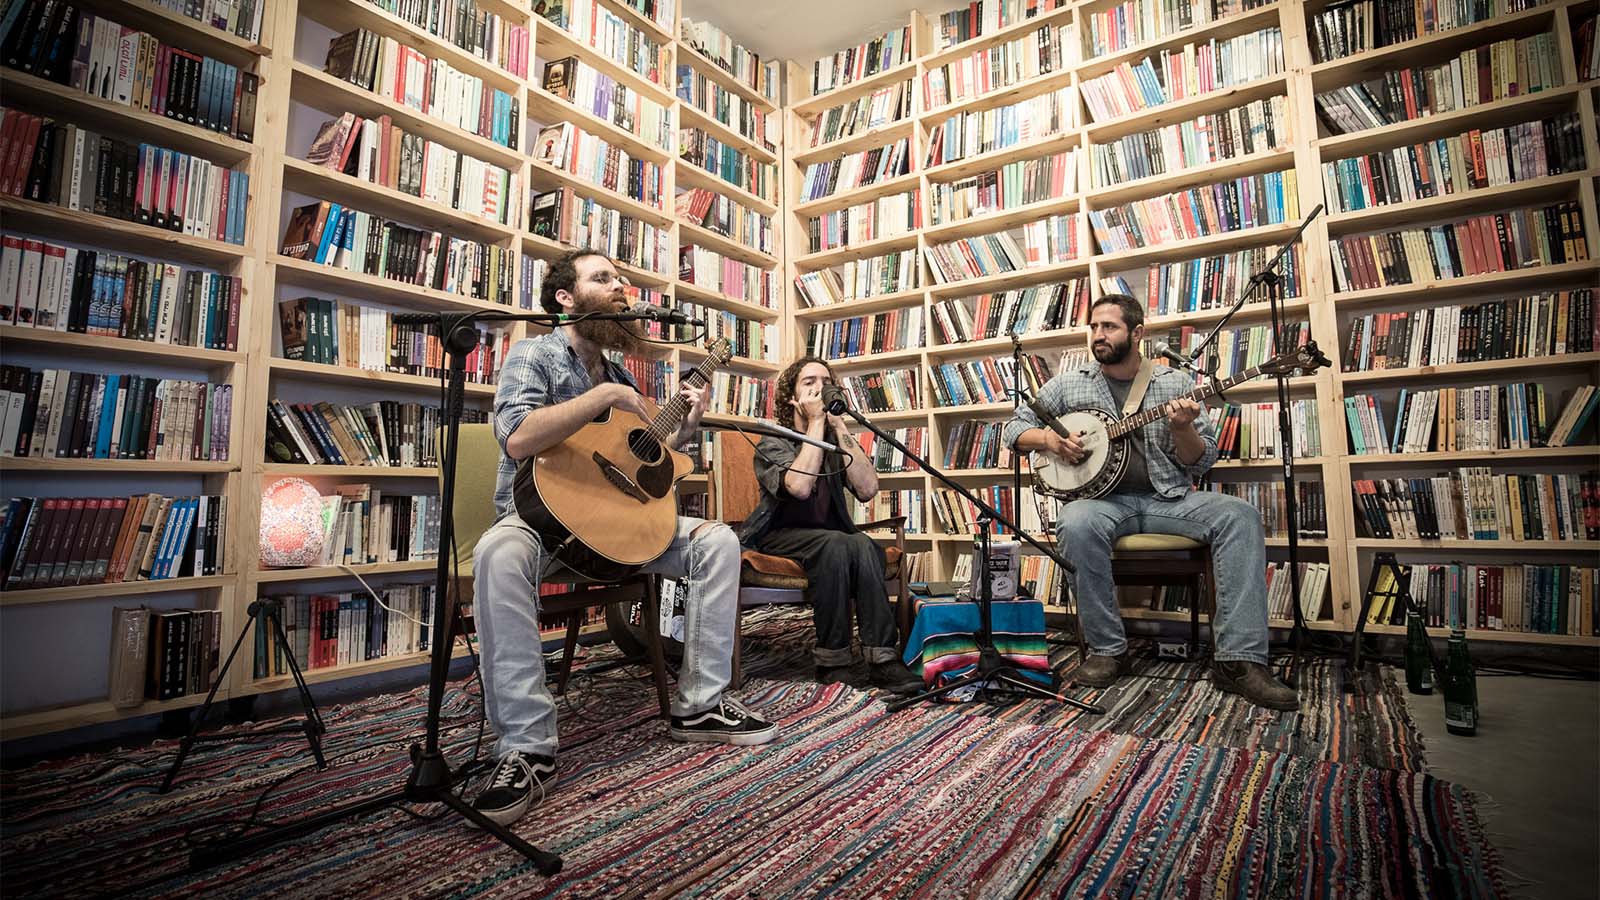 אירועי מוזיקה חיה בחנות החדשה של גולדמונד ספרים (צילום: אייל לבקוביץ)